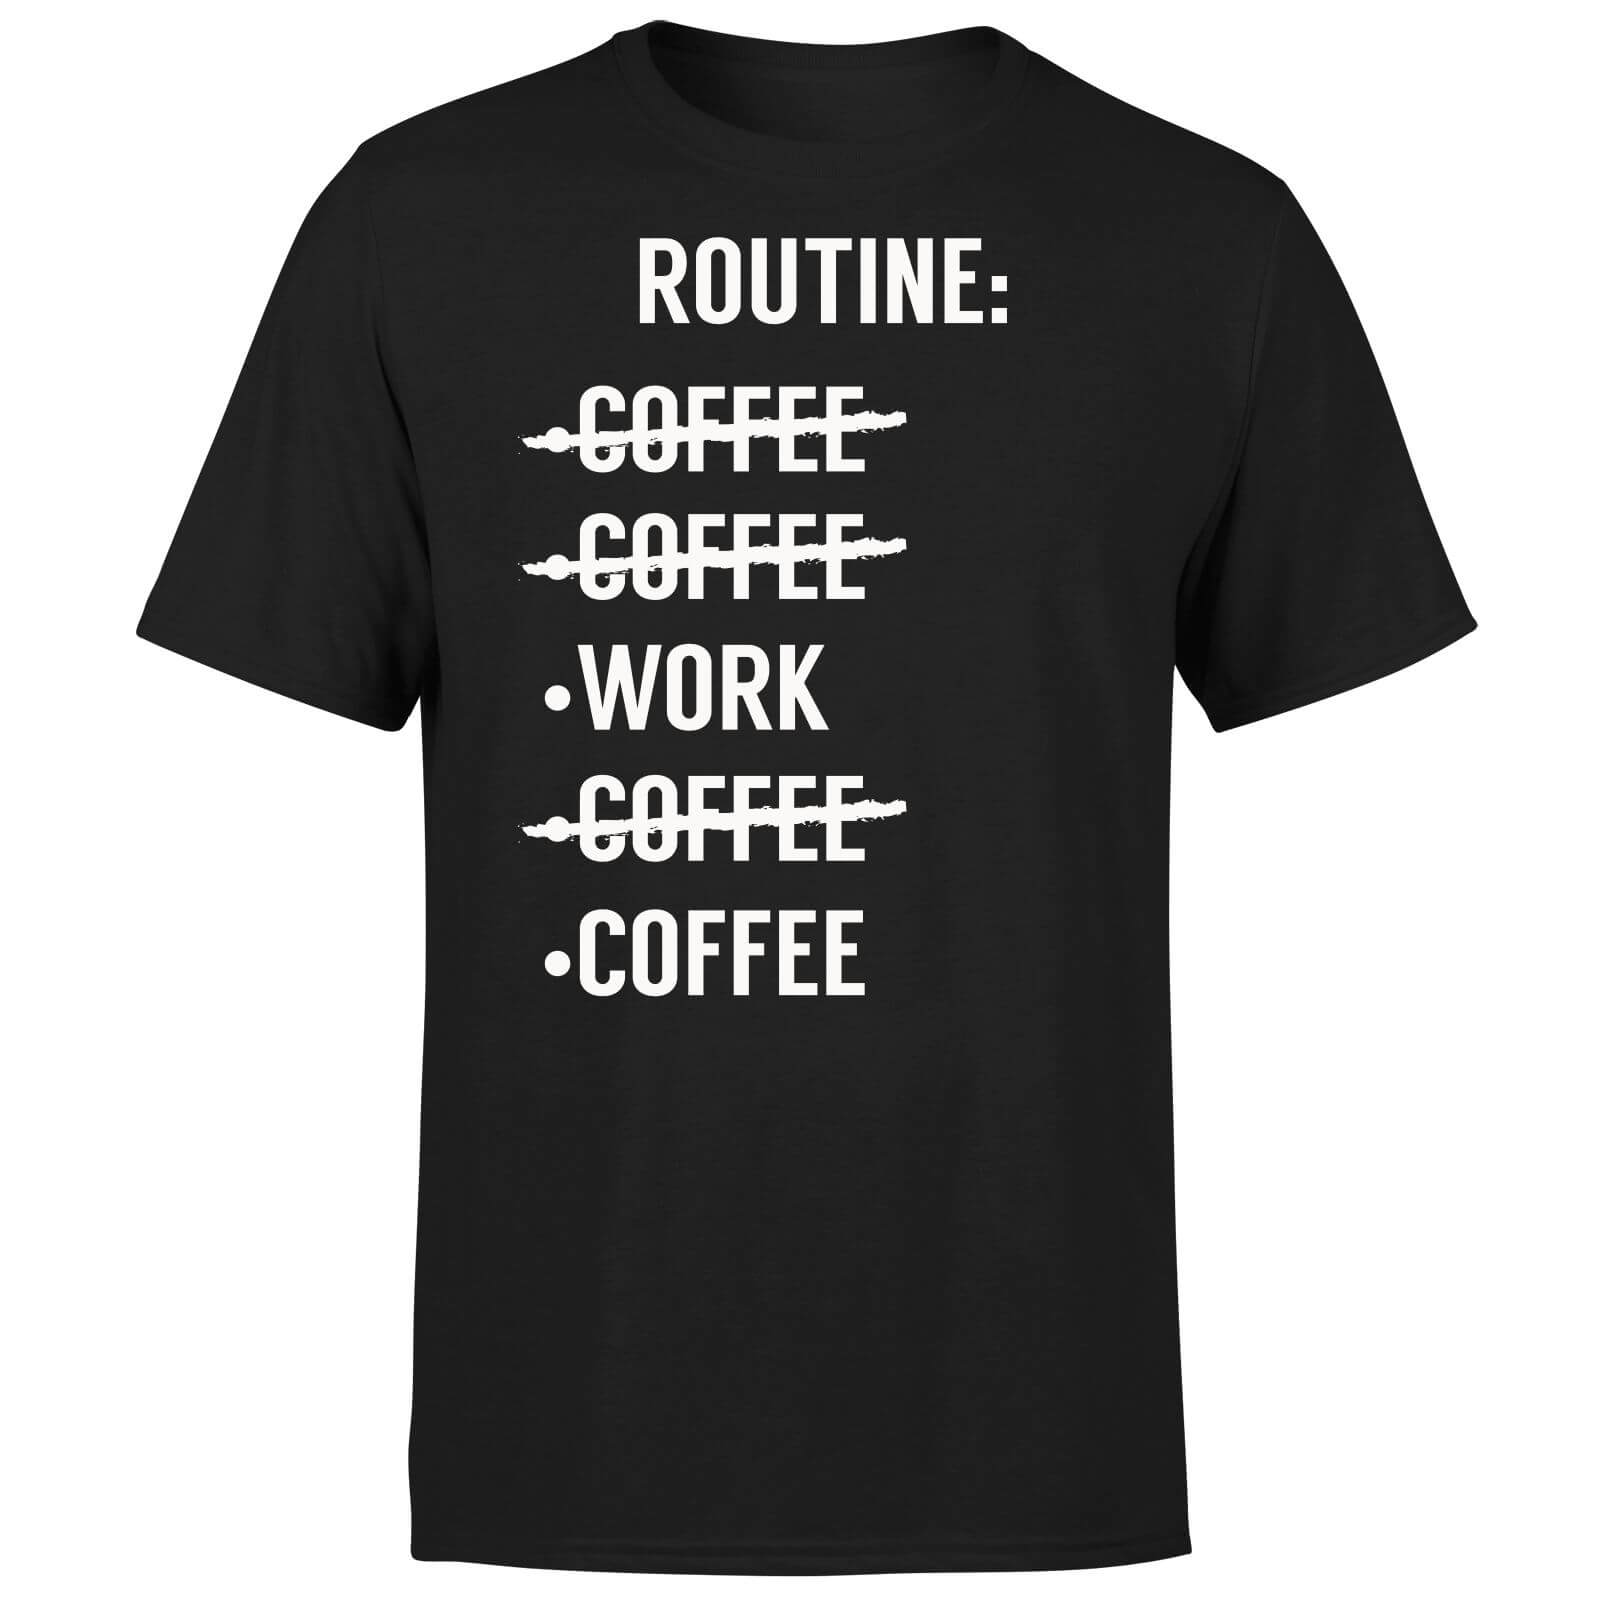 Coffee Routine T-Shirt - Black - S - Black